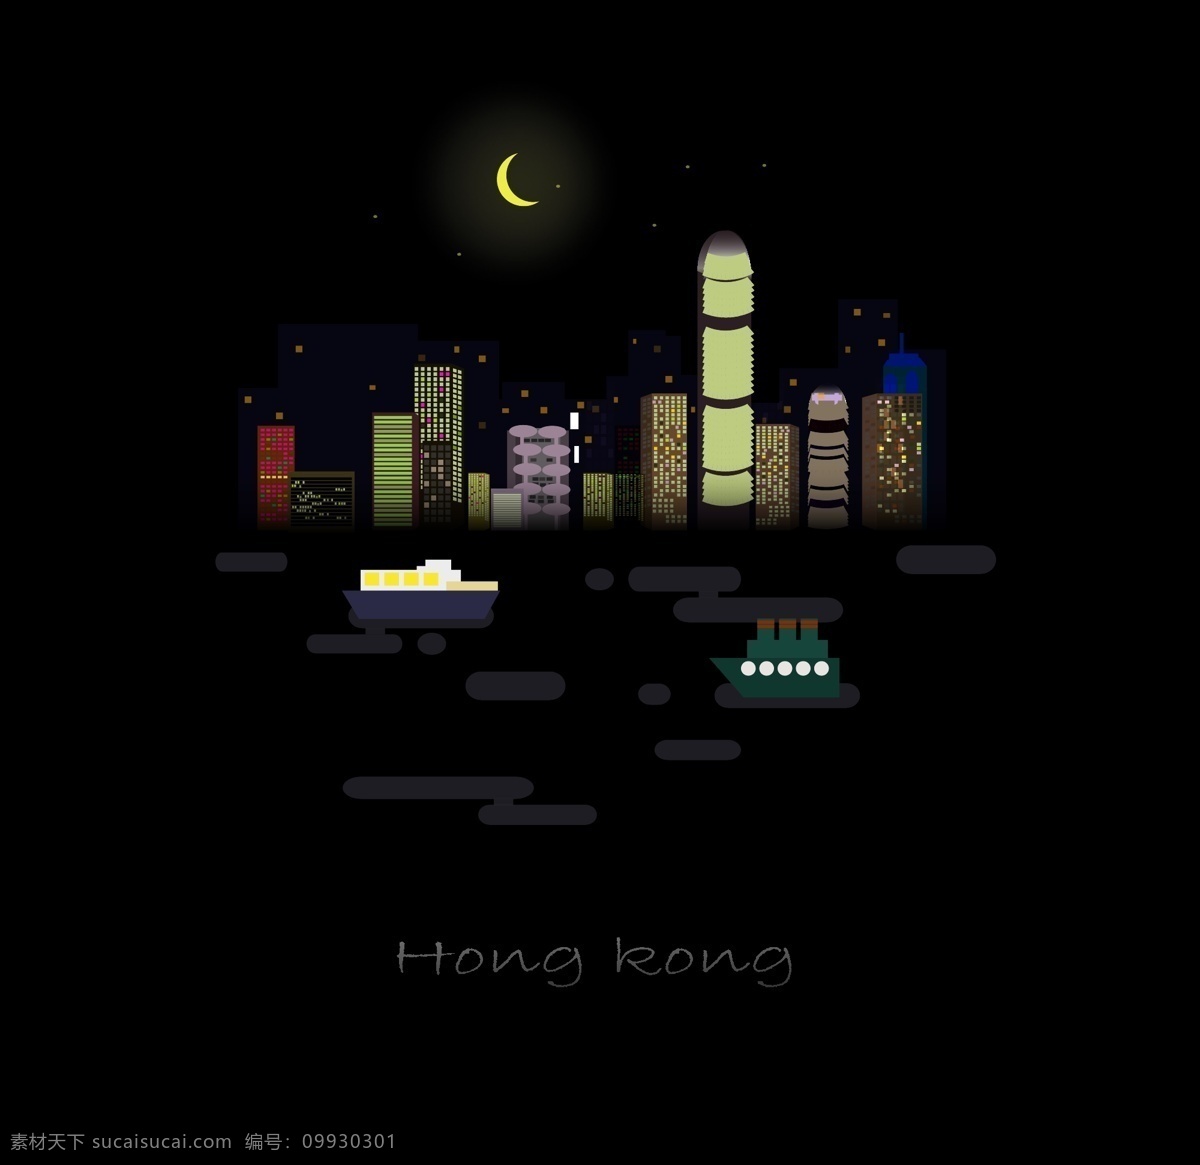 香港 夜景 扁平 风景 矢量 插画 风景插画 维多利亚港 建筑 夜晚 月亮 轮船 黑色 高楼大厦 水 船 安静